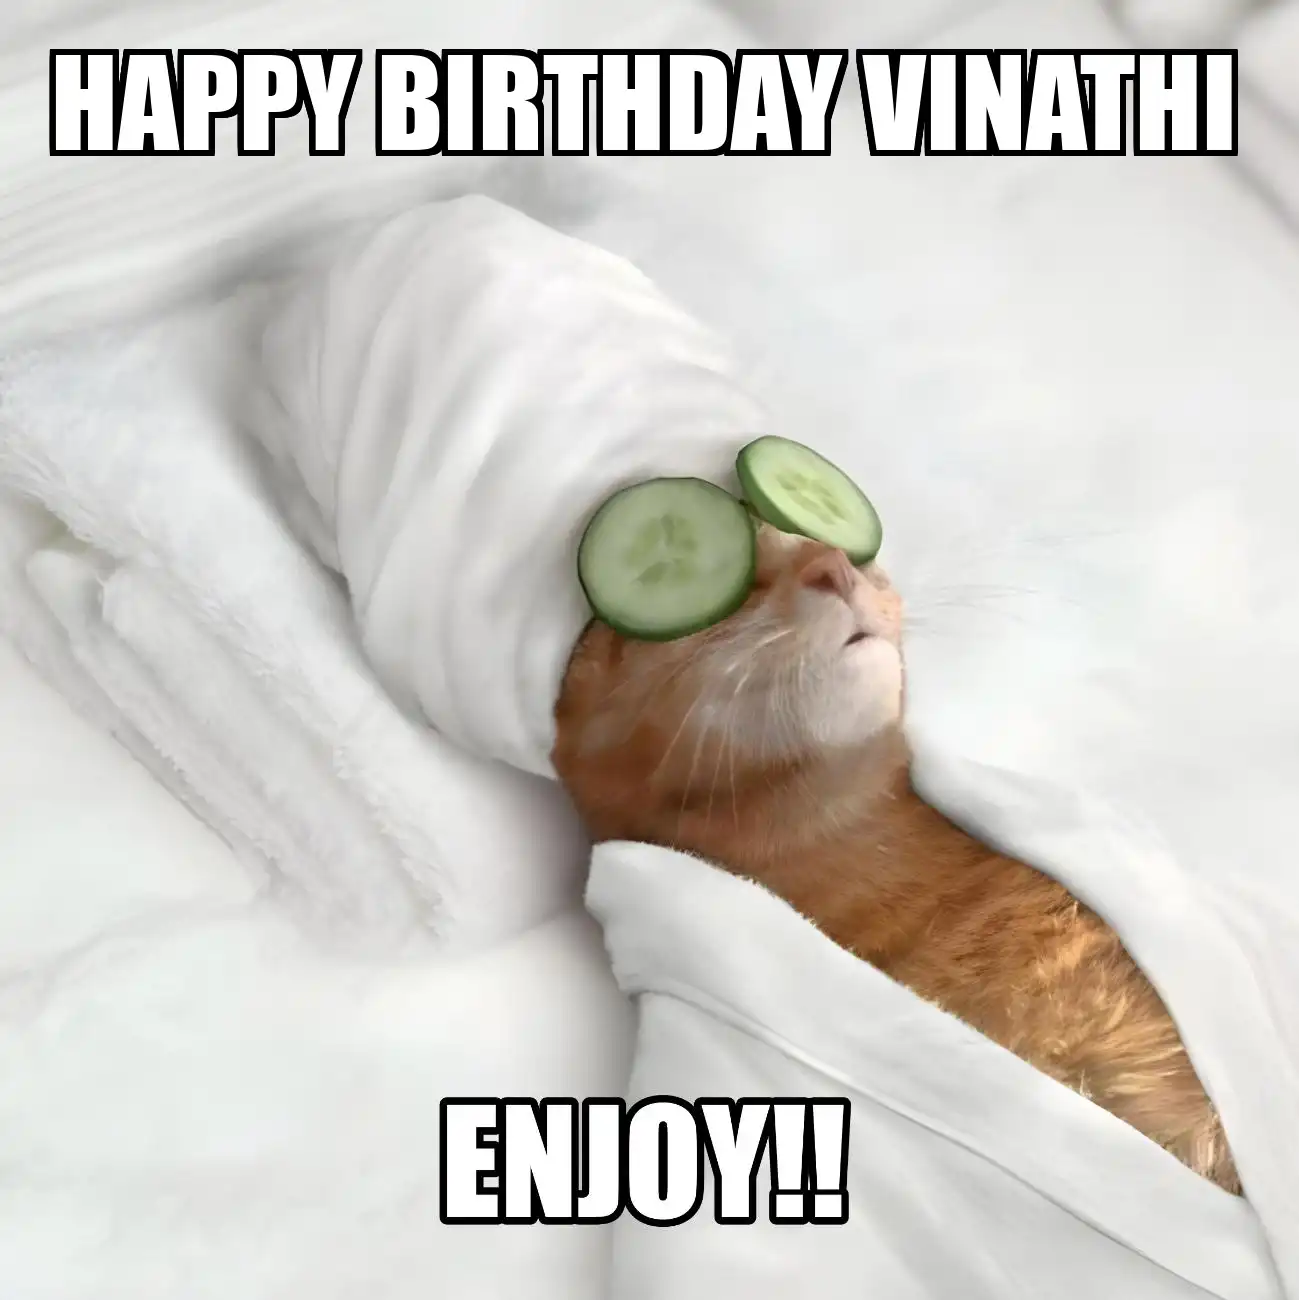 Happy Birthday Vinathi Enjoy Cat Meme